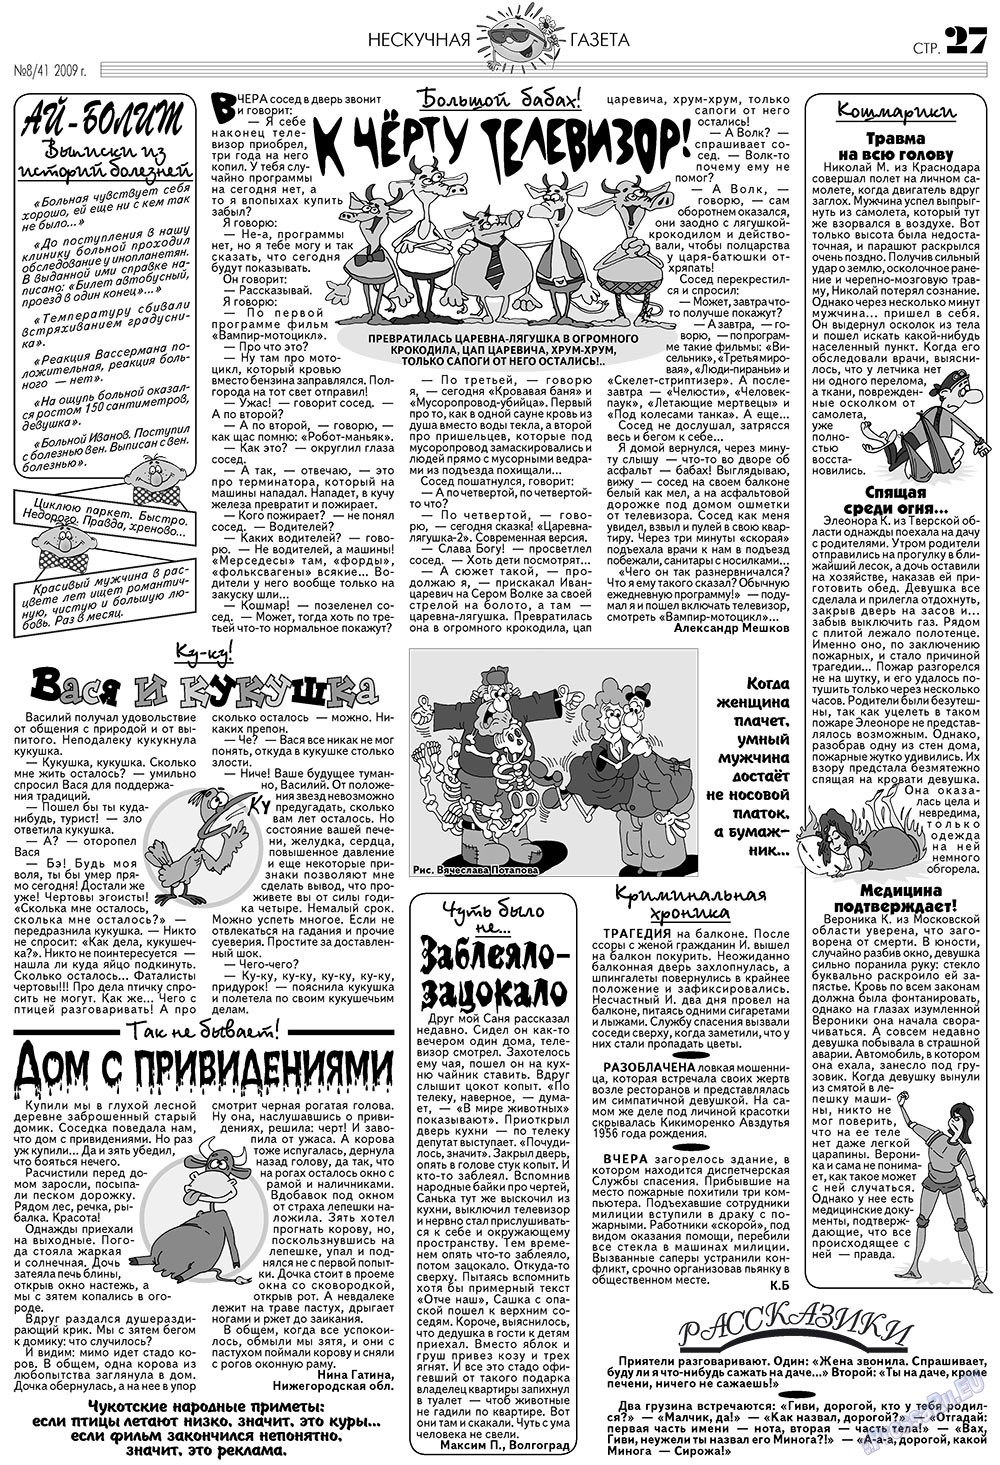 Нескучная газета, журнал. 2009 №8 стр.23